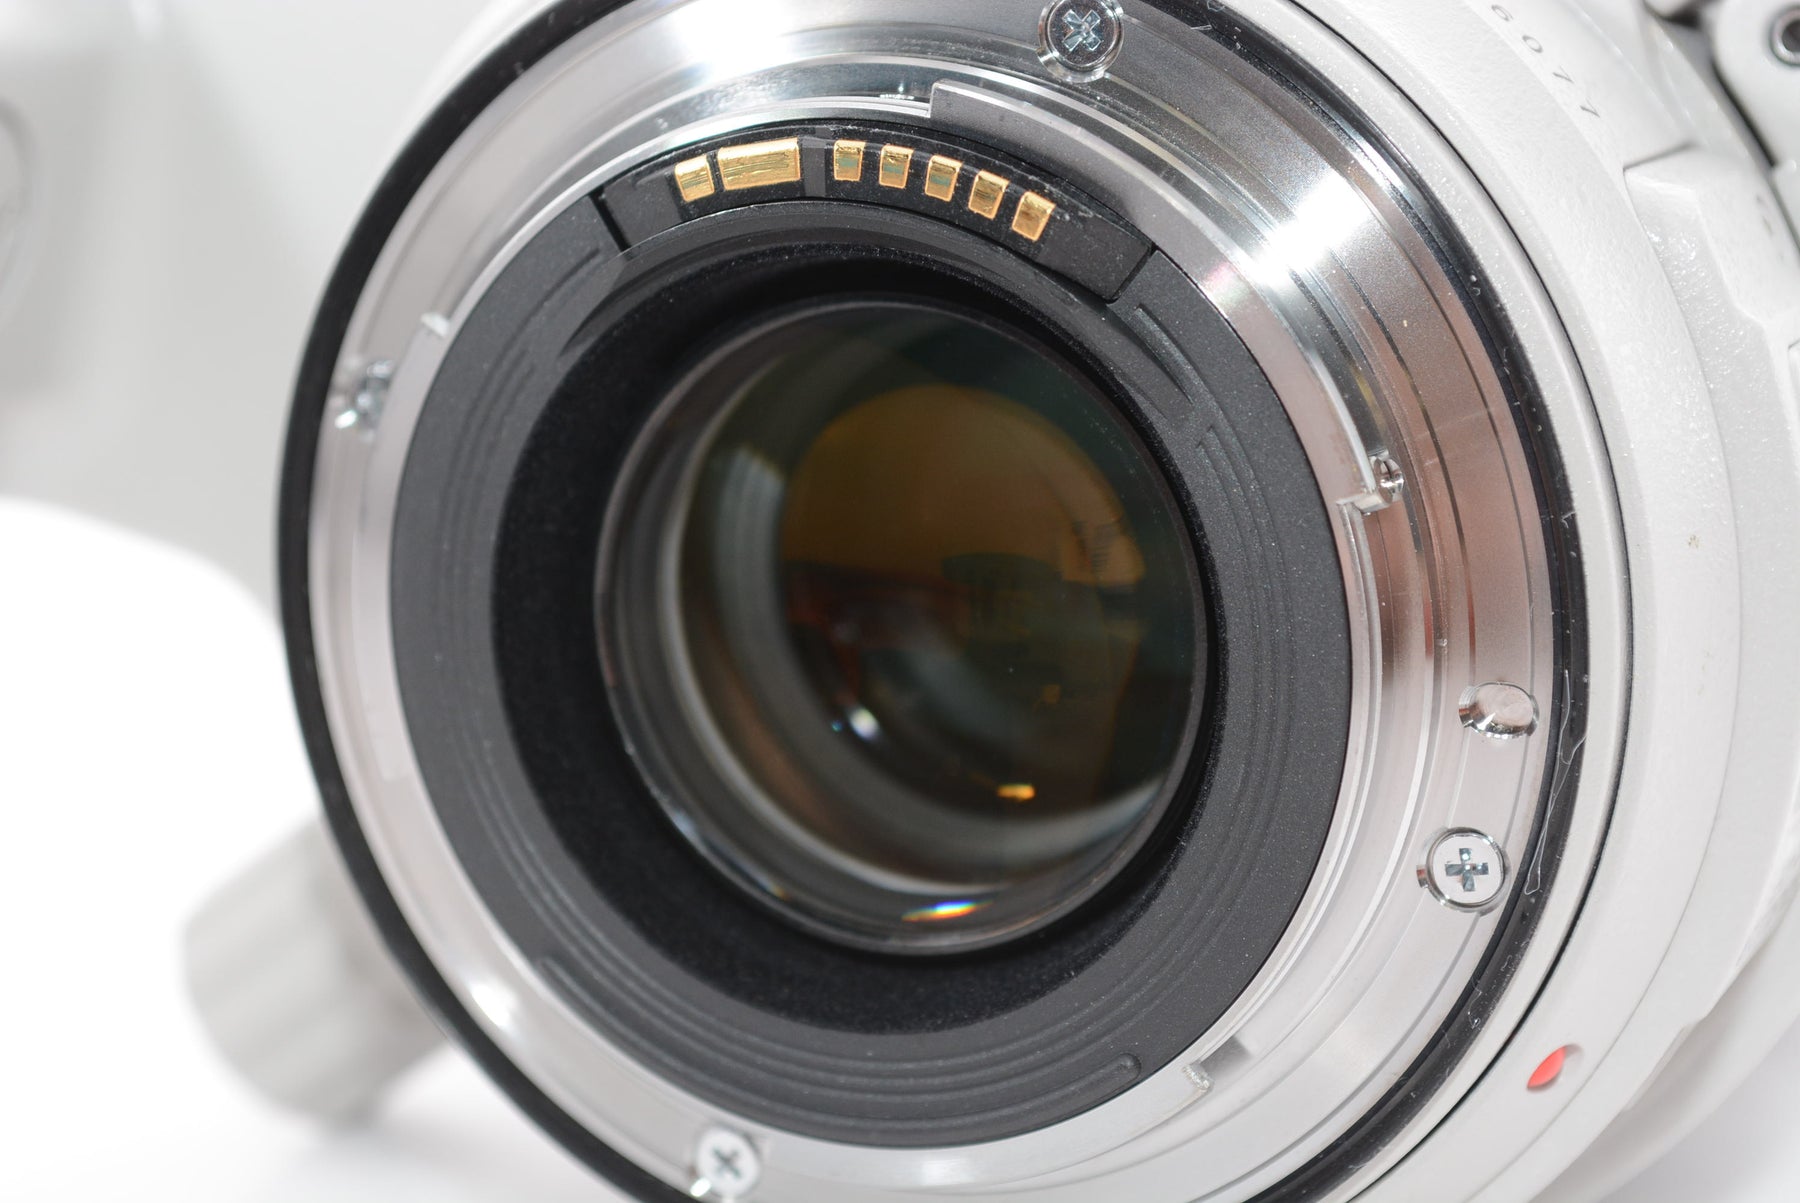 【外観特上級】Canon EF70-300mm F4-5.6L IS USM